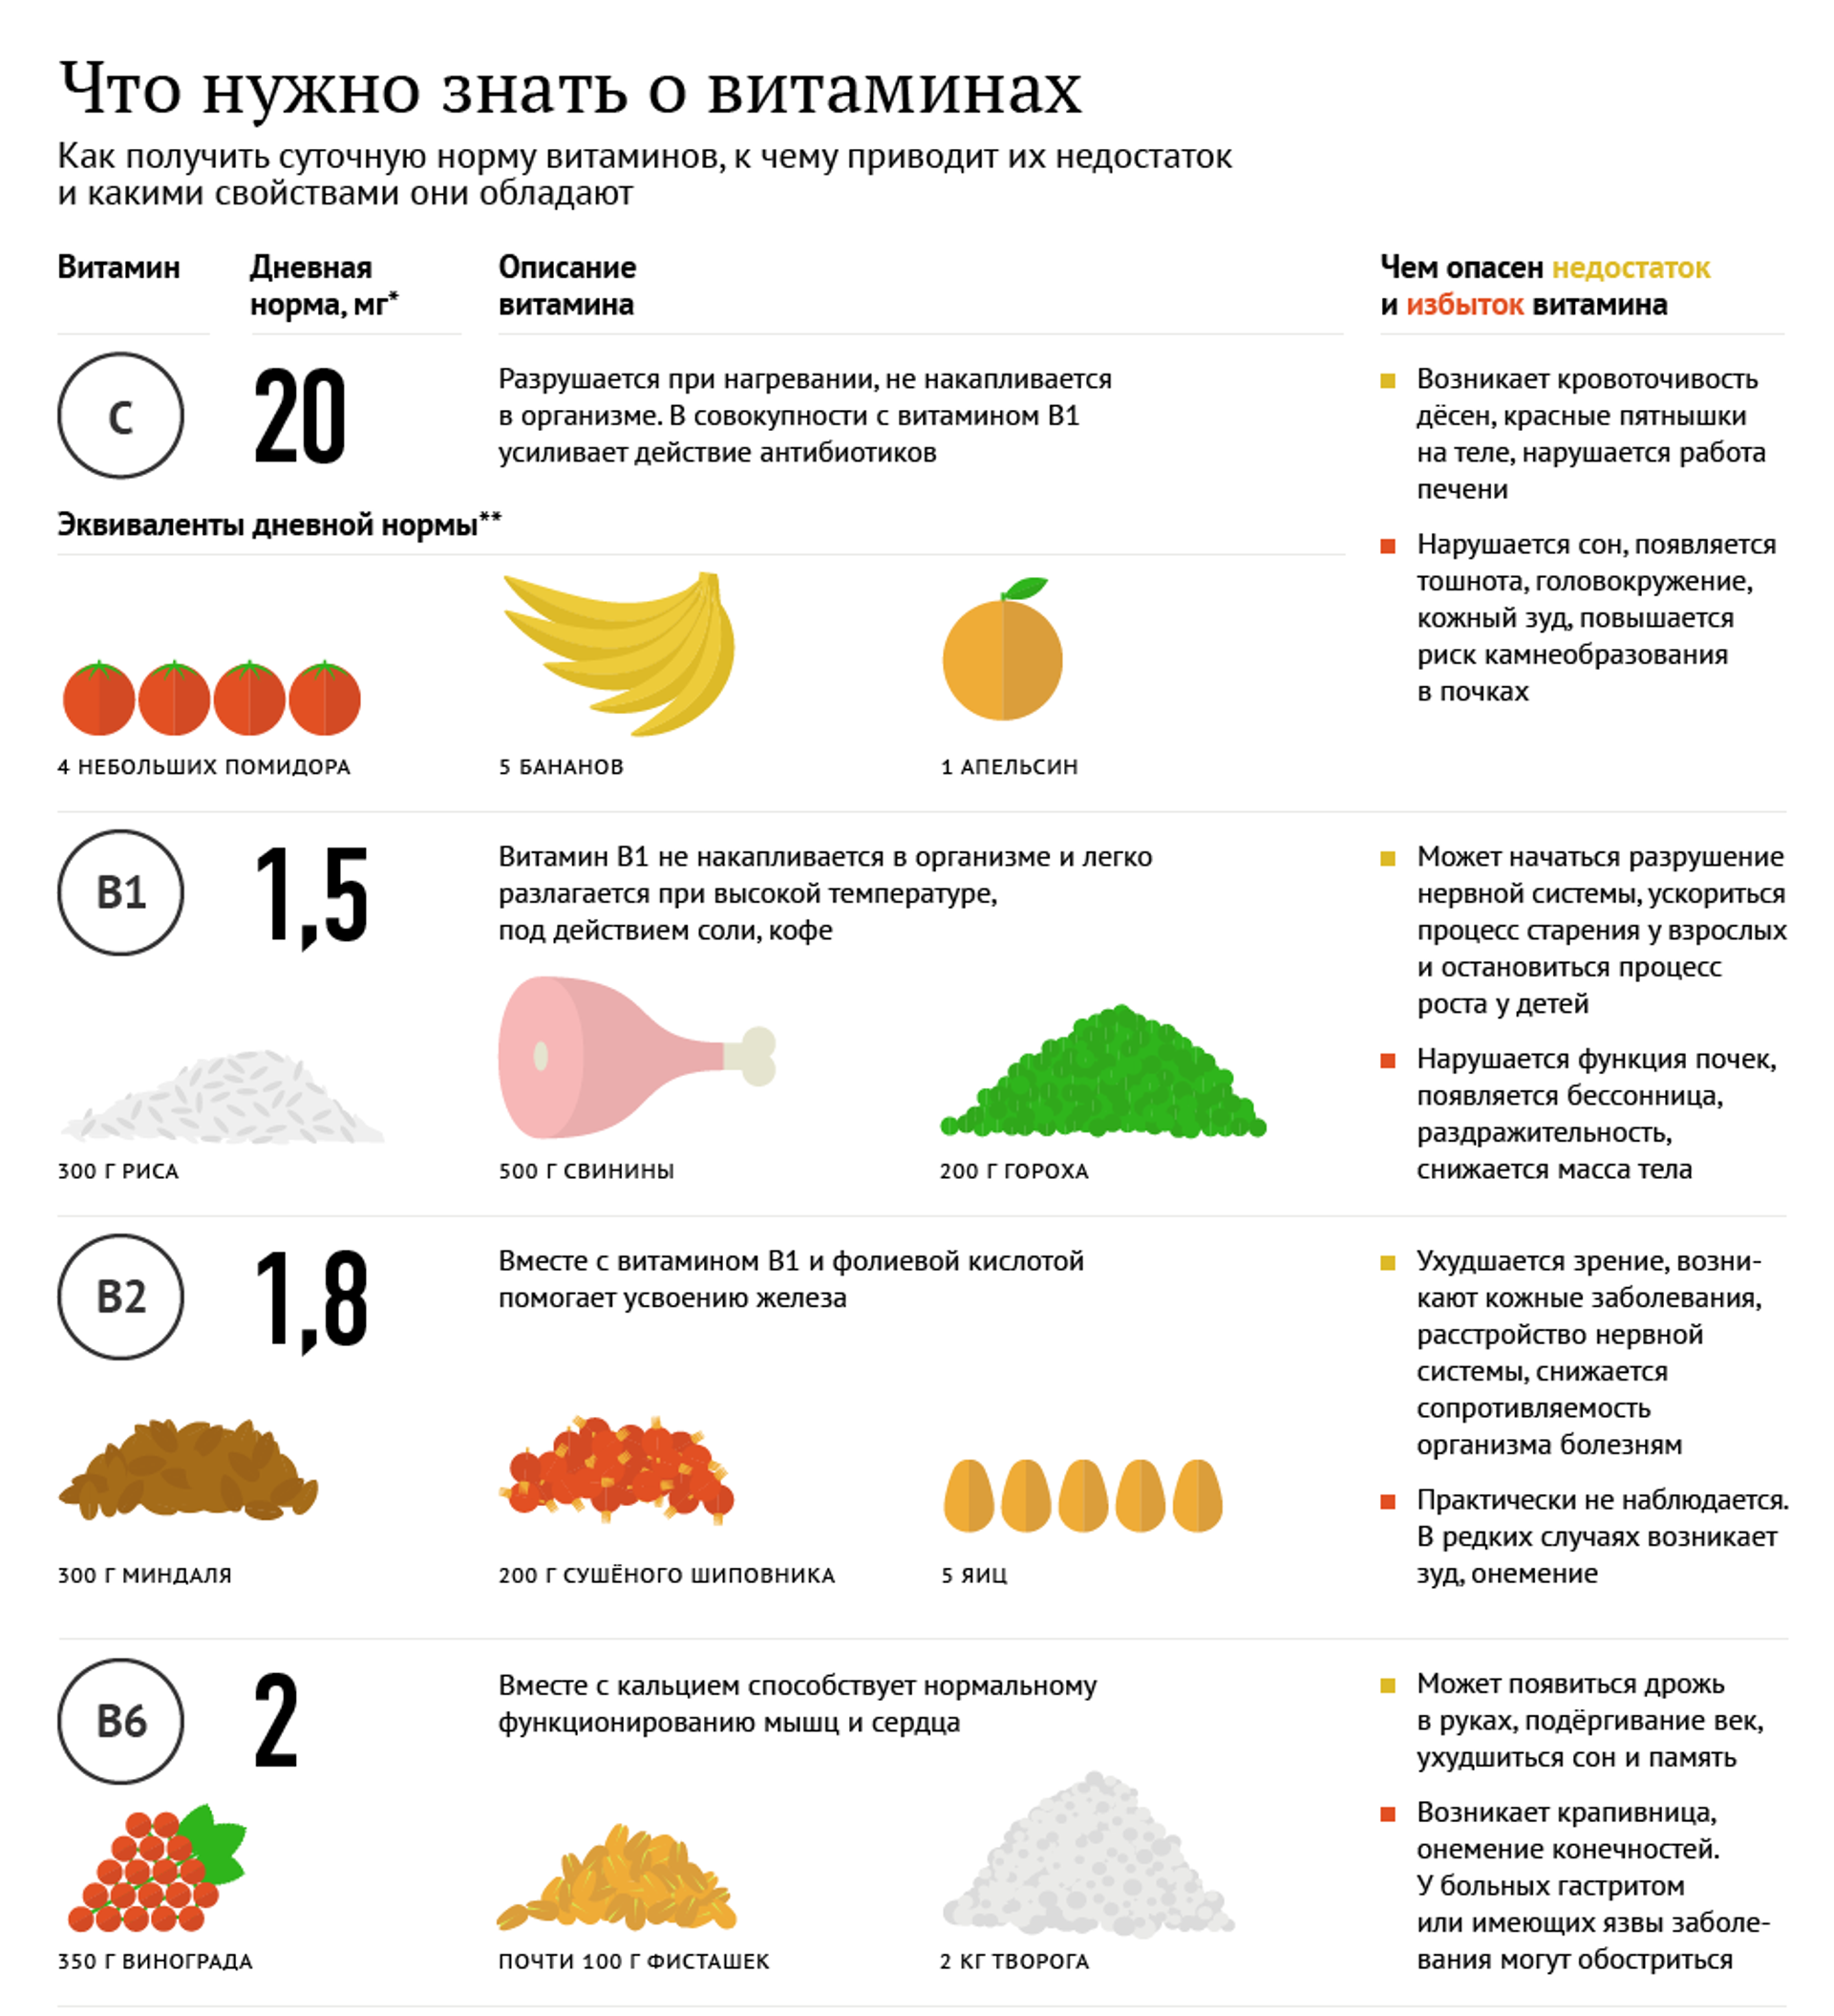 Анализ на дефициты витаминов и минералов